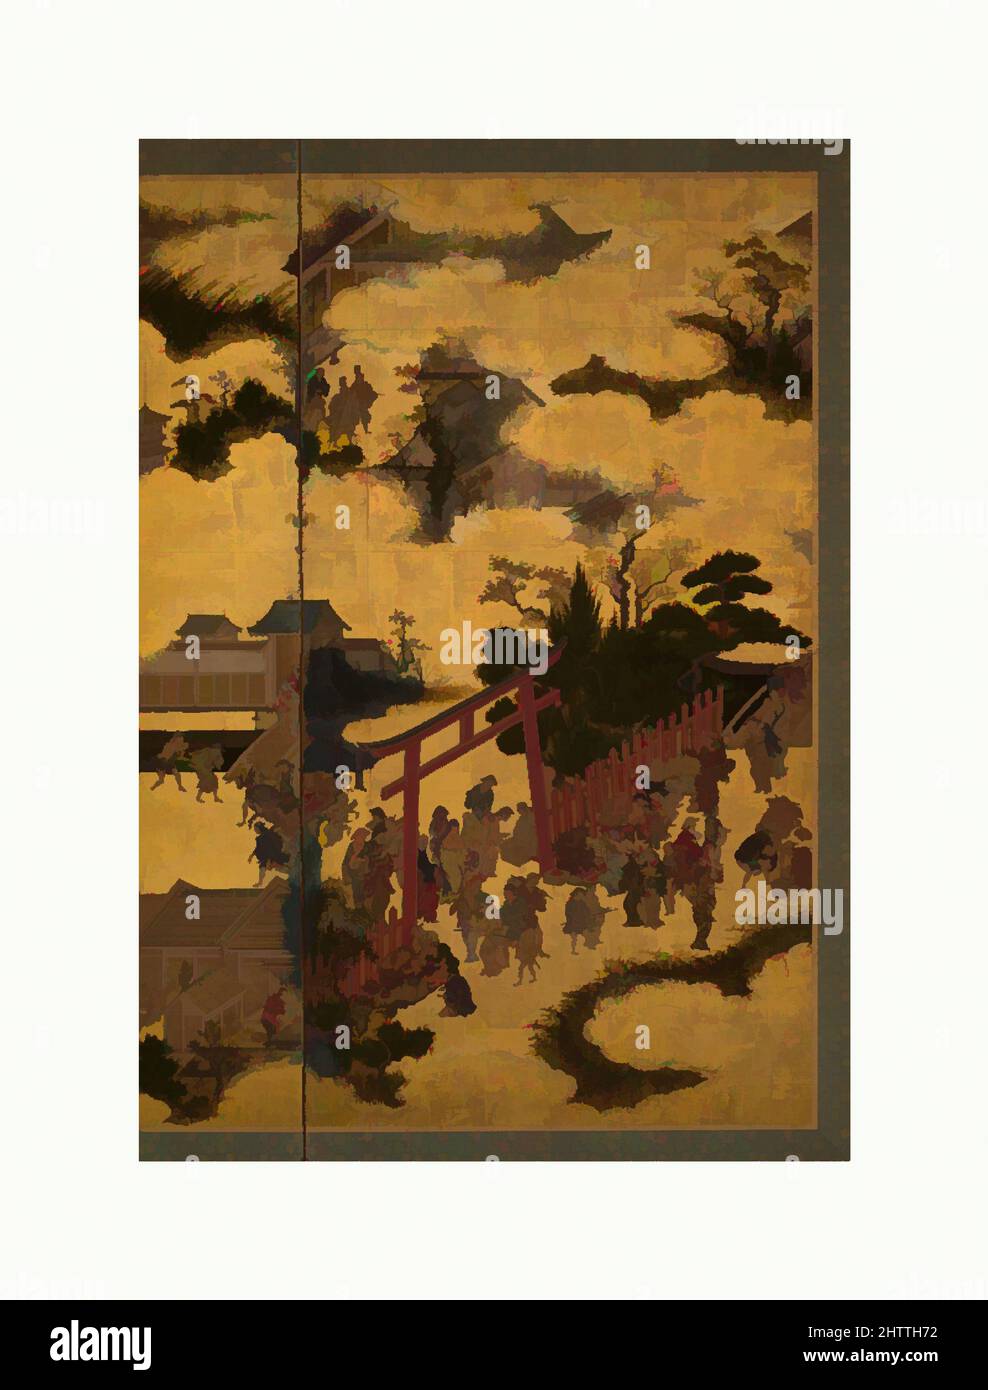 Arte ispirata alla porta del Santuario, periodo Edo (1615-1868), 17th secolo, Giappone, schermo pieghevole a due pannelli; inchiostro, colore e oro su carta, 60 x 64 1/4 pollici (152,4 x 163,2 cm), schermi, questa vista dall'alto di un santuario Shinto e dei suoi dintorni offre una vivace scena del XVII secolo, opere classiche modernizzate da Artotop con un tuffo di modernità. Forme, colore e valore, impatto visivo accattivante sulle emozioni artistiche attraverso la libertà delle opere d'arte in modo contemporaneo. Un messaggio senza tempo che persegue una nuova direzione selvaggiamente creativa. Artisti che si rivolgono al supporto digitale e creano l'NFT Artotop Foto Stock